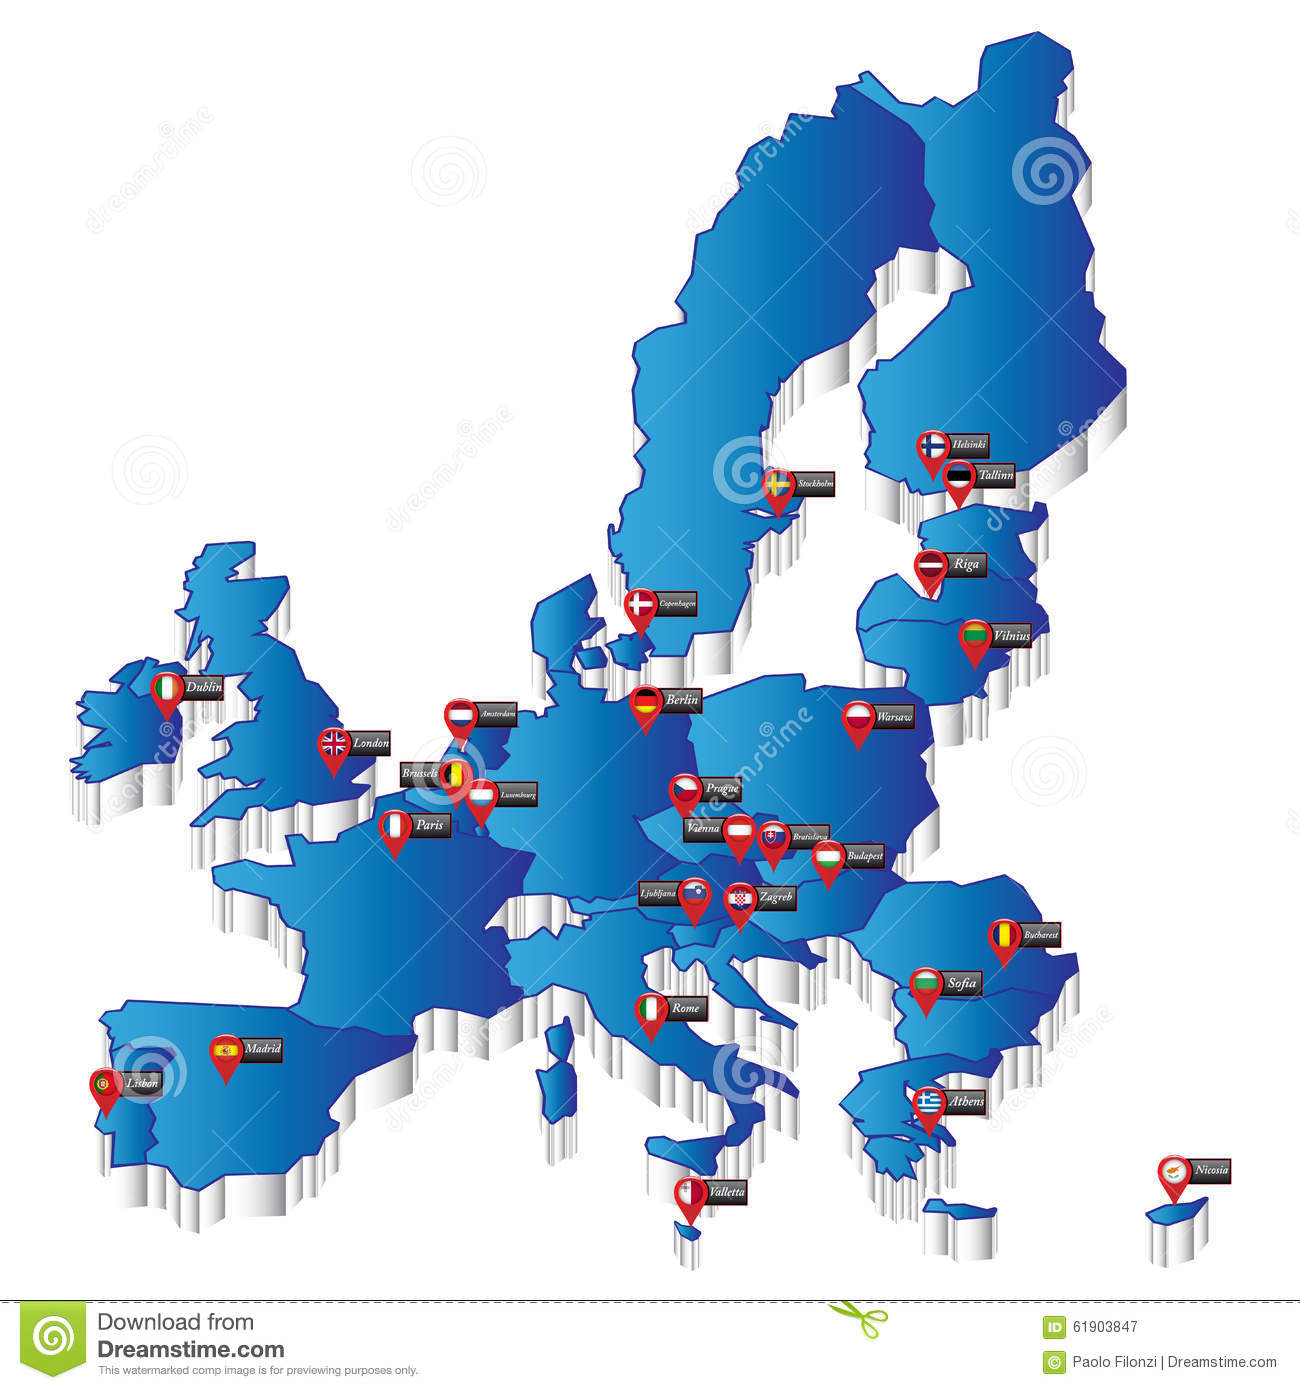 Carte De L'europe Avec Des Indicateurs De Capital Image intérieur Carte D Europe Capitale